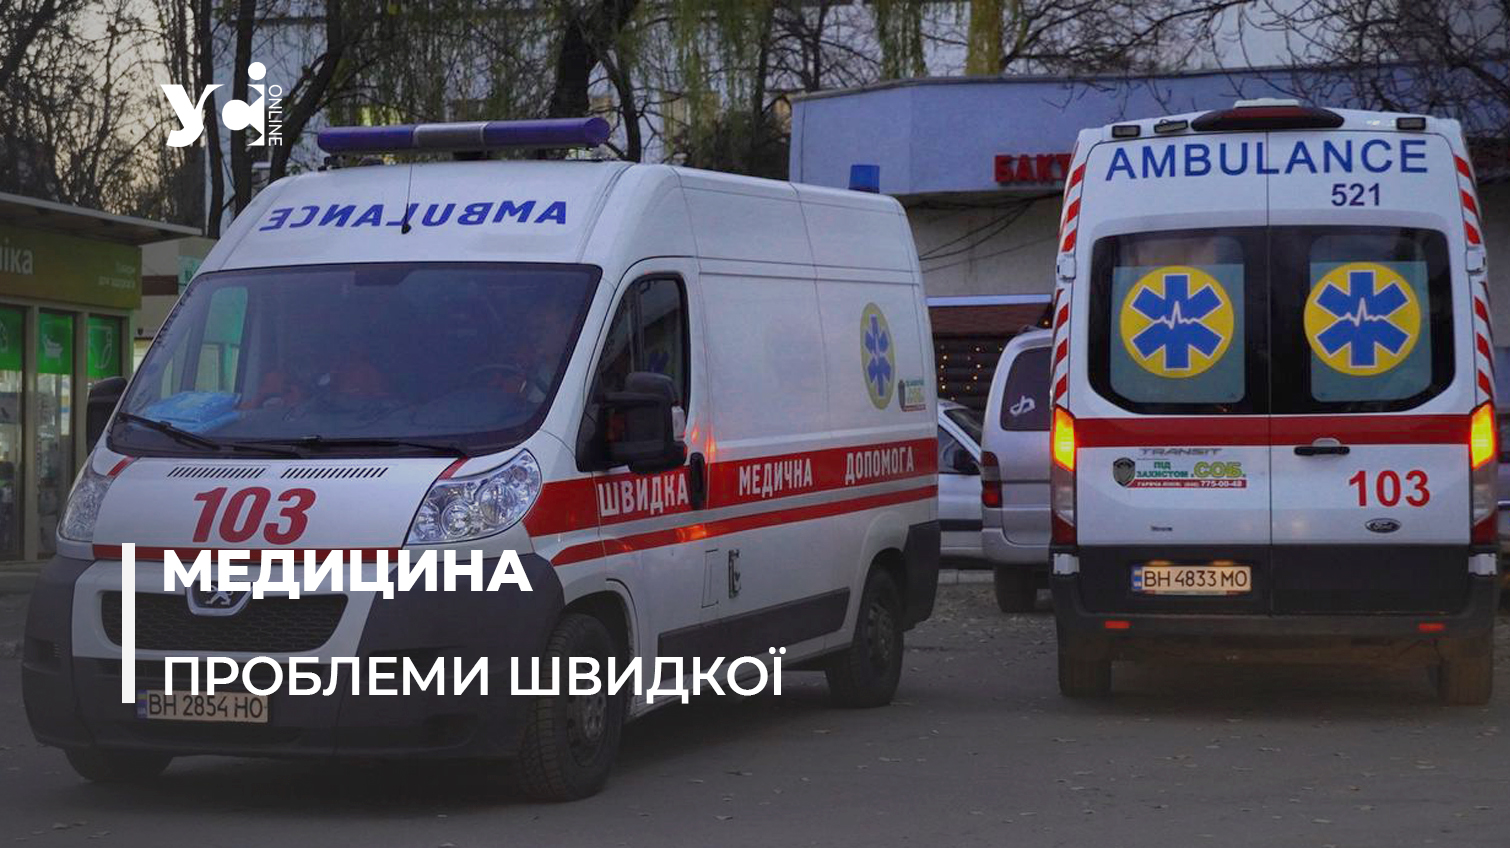 Допомоги можна не дочекатись? – ситуація зі швидкою в Одесі «фото»